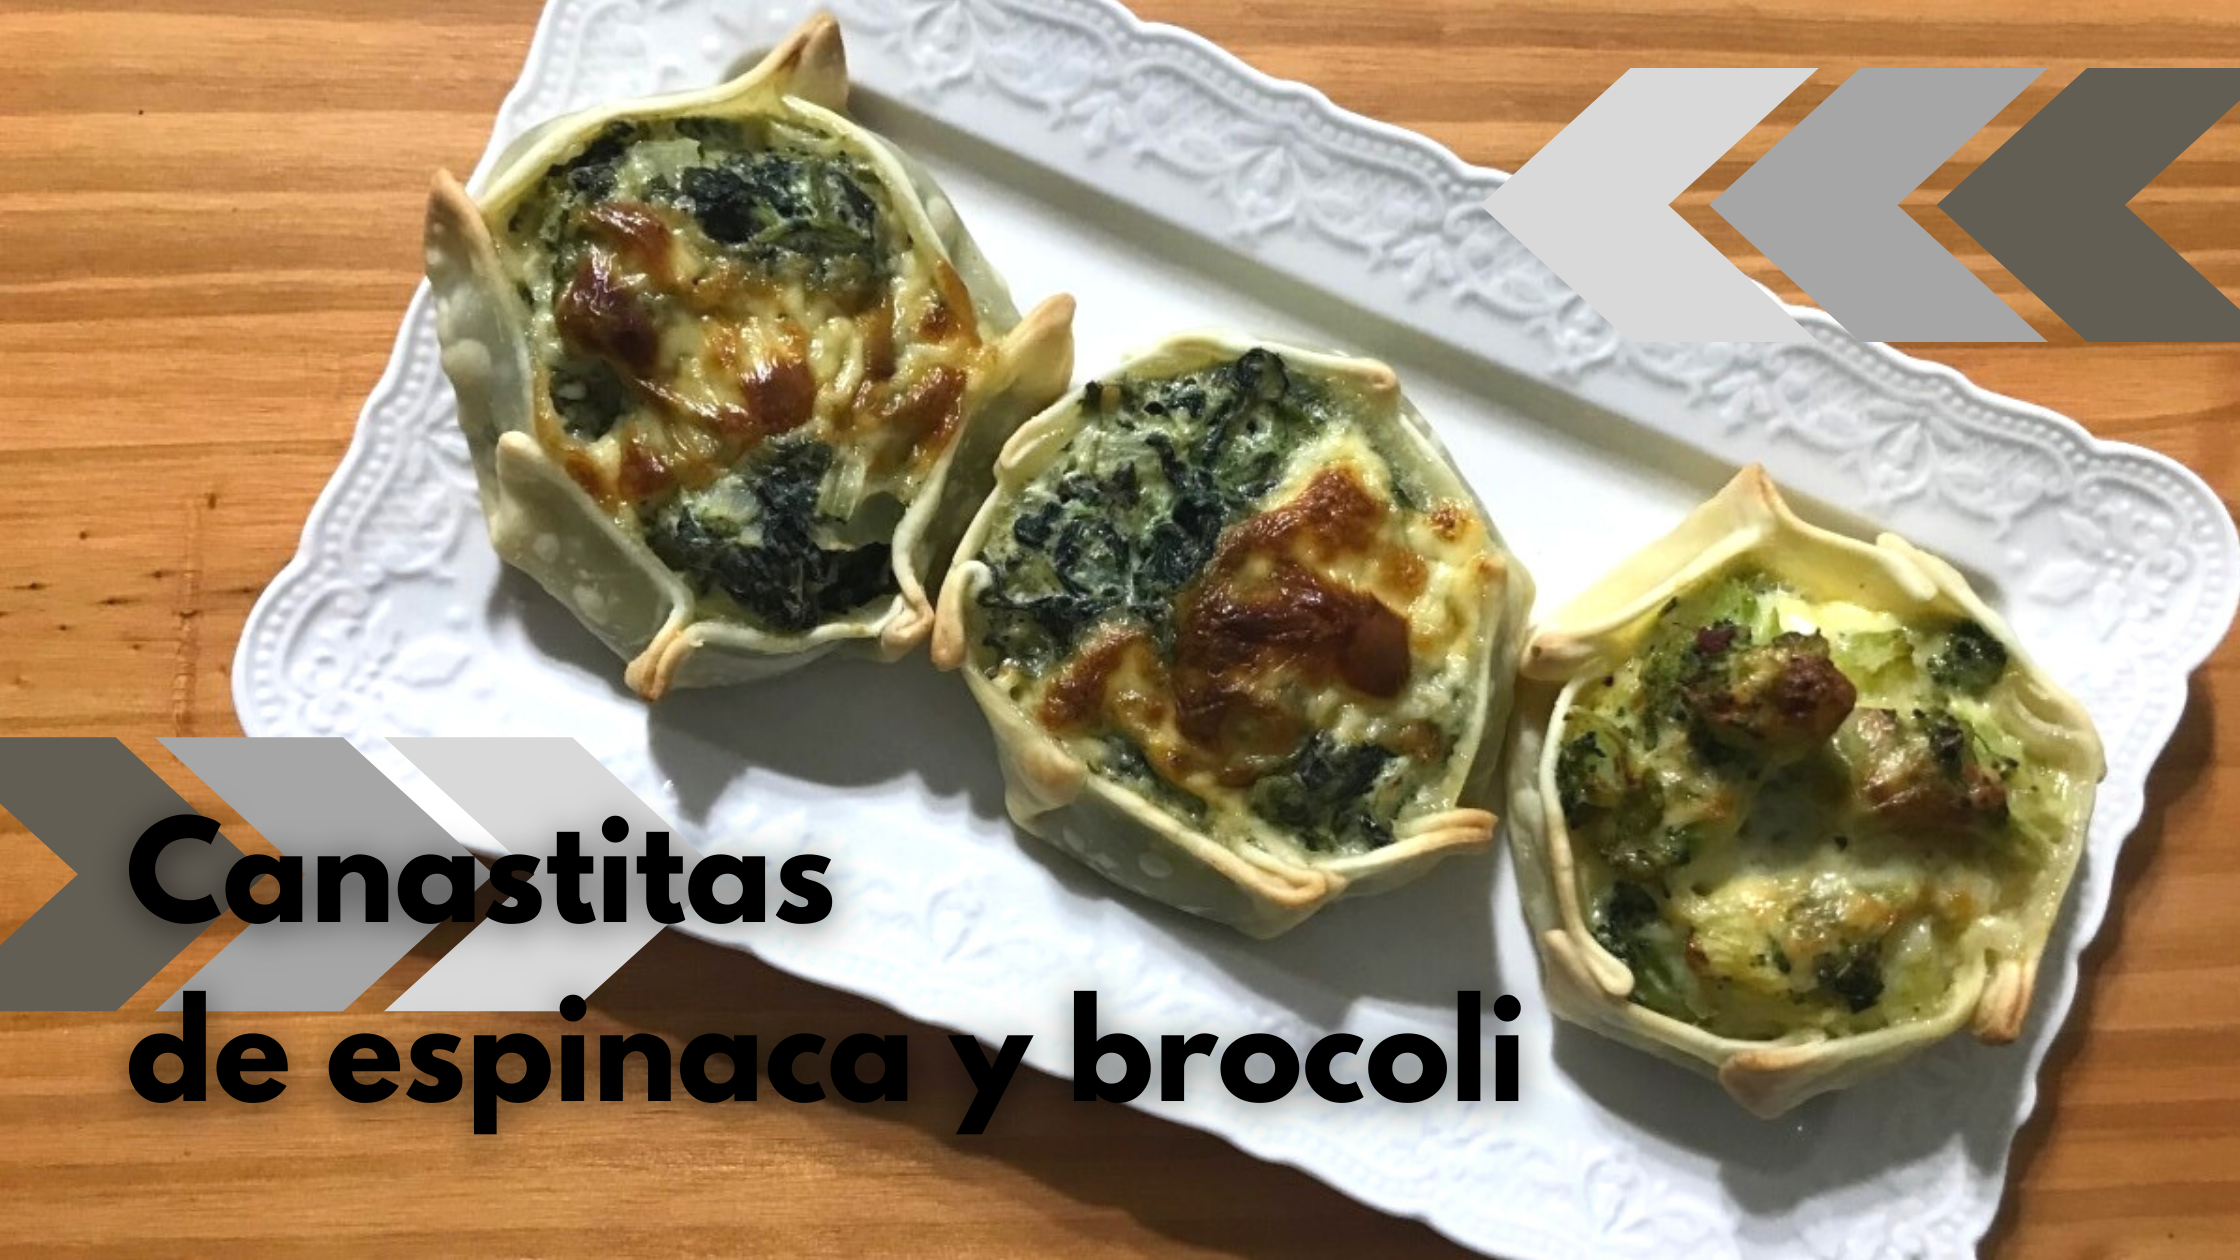 Canastitas de espinaca y brocoli.png